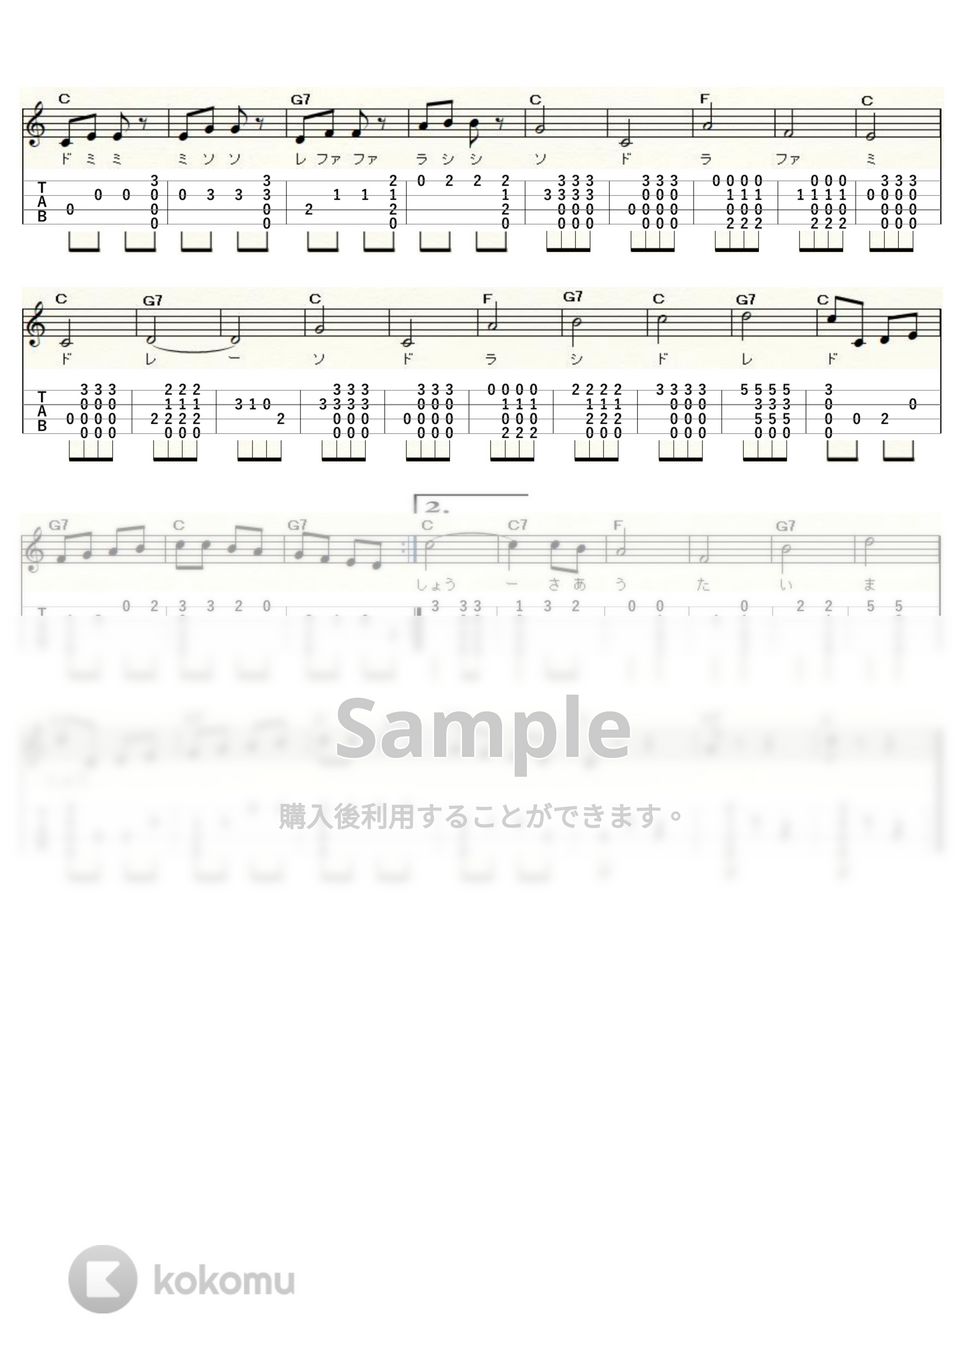 リチャード・ロジャース - ドレミの歌 (ｳｸﾚﾚｿﾛ / High-G,Low-G / 初～中級) by ukulelepapa